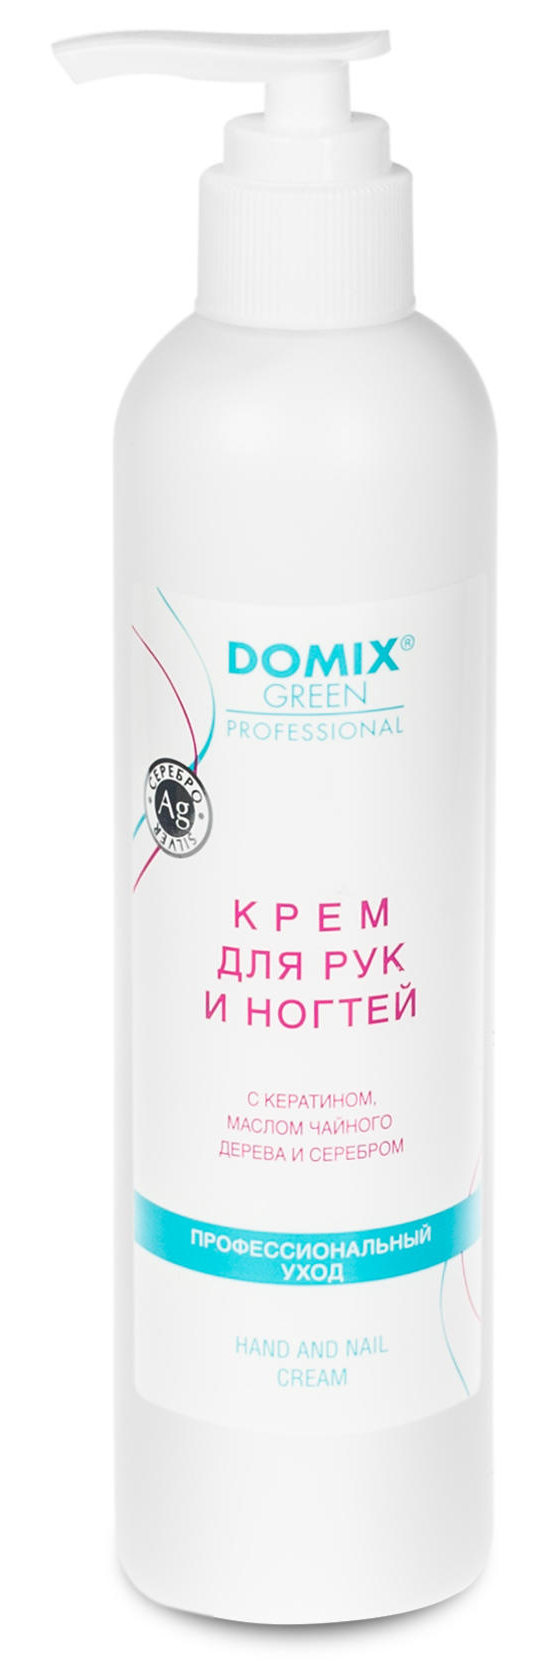 DOMIX Крем для рук и ногтей с кератином, маслом чайного дерева и наносеребром /ПРОФФ/ 250 мл. Домикс